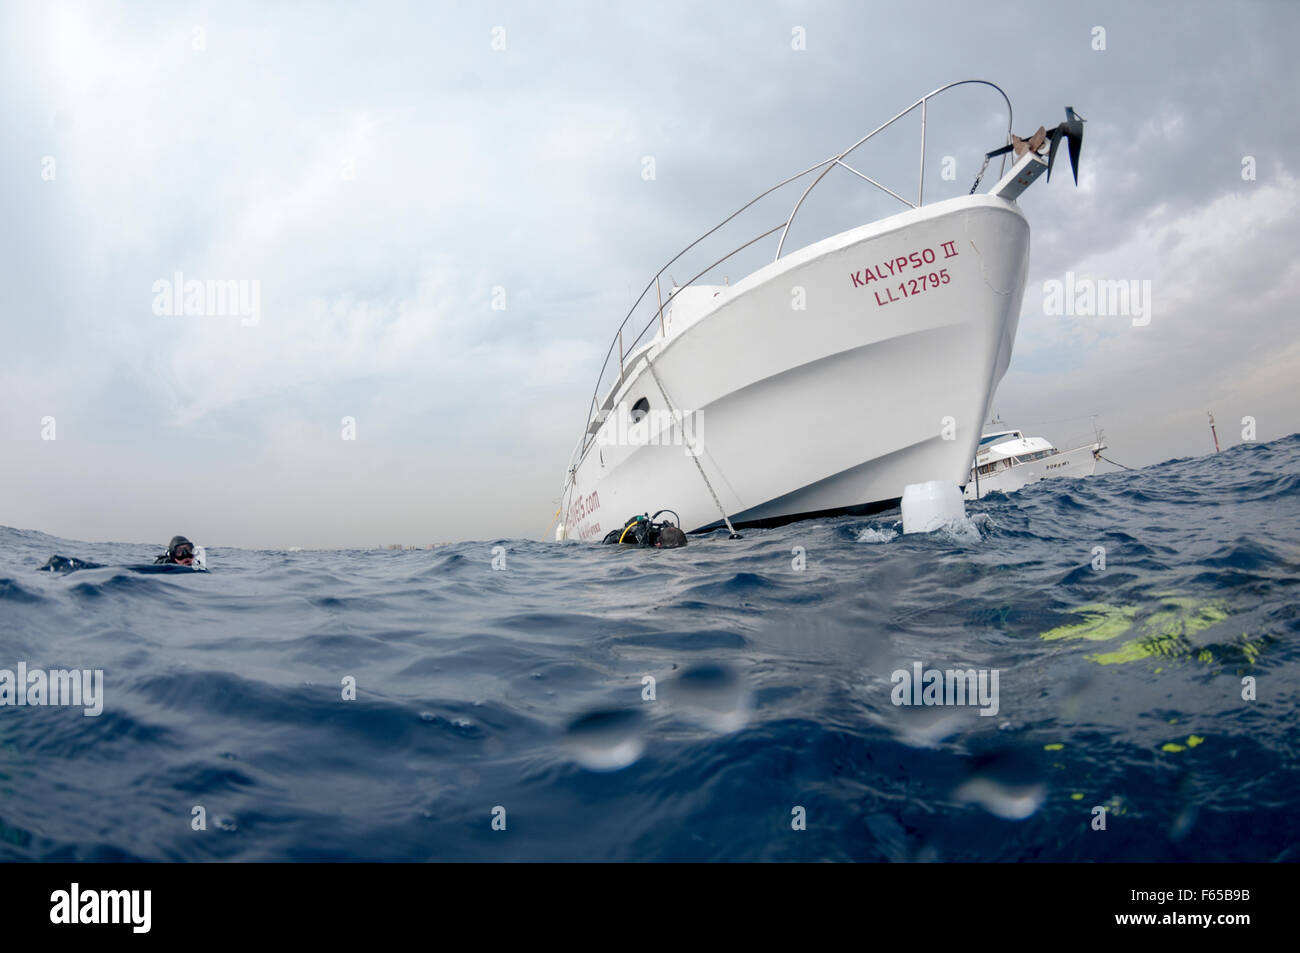 La barca è ancorata in prossimità del sito di immersione e i subacquei sono entrati a far parte dell'acqua fotografati della costa di Larnaca, Cipro Foto Stock